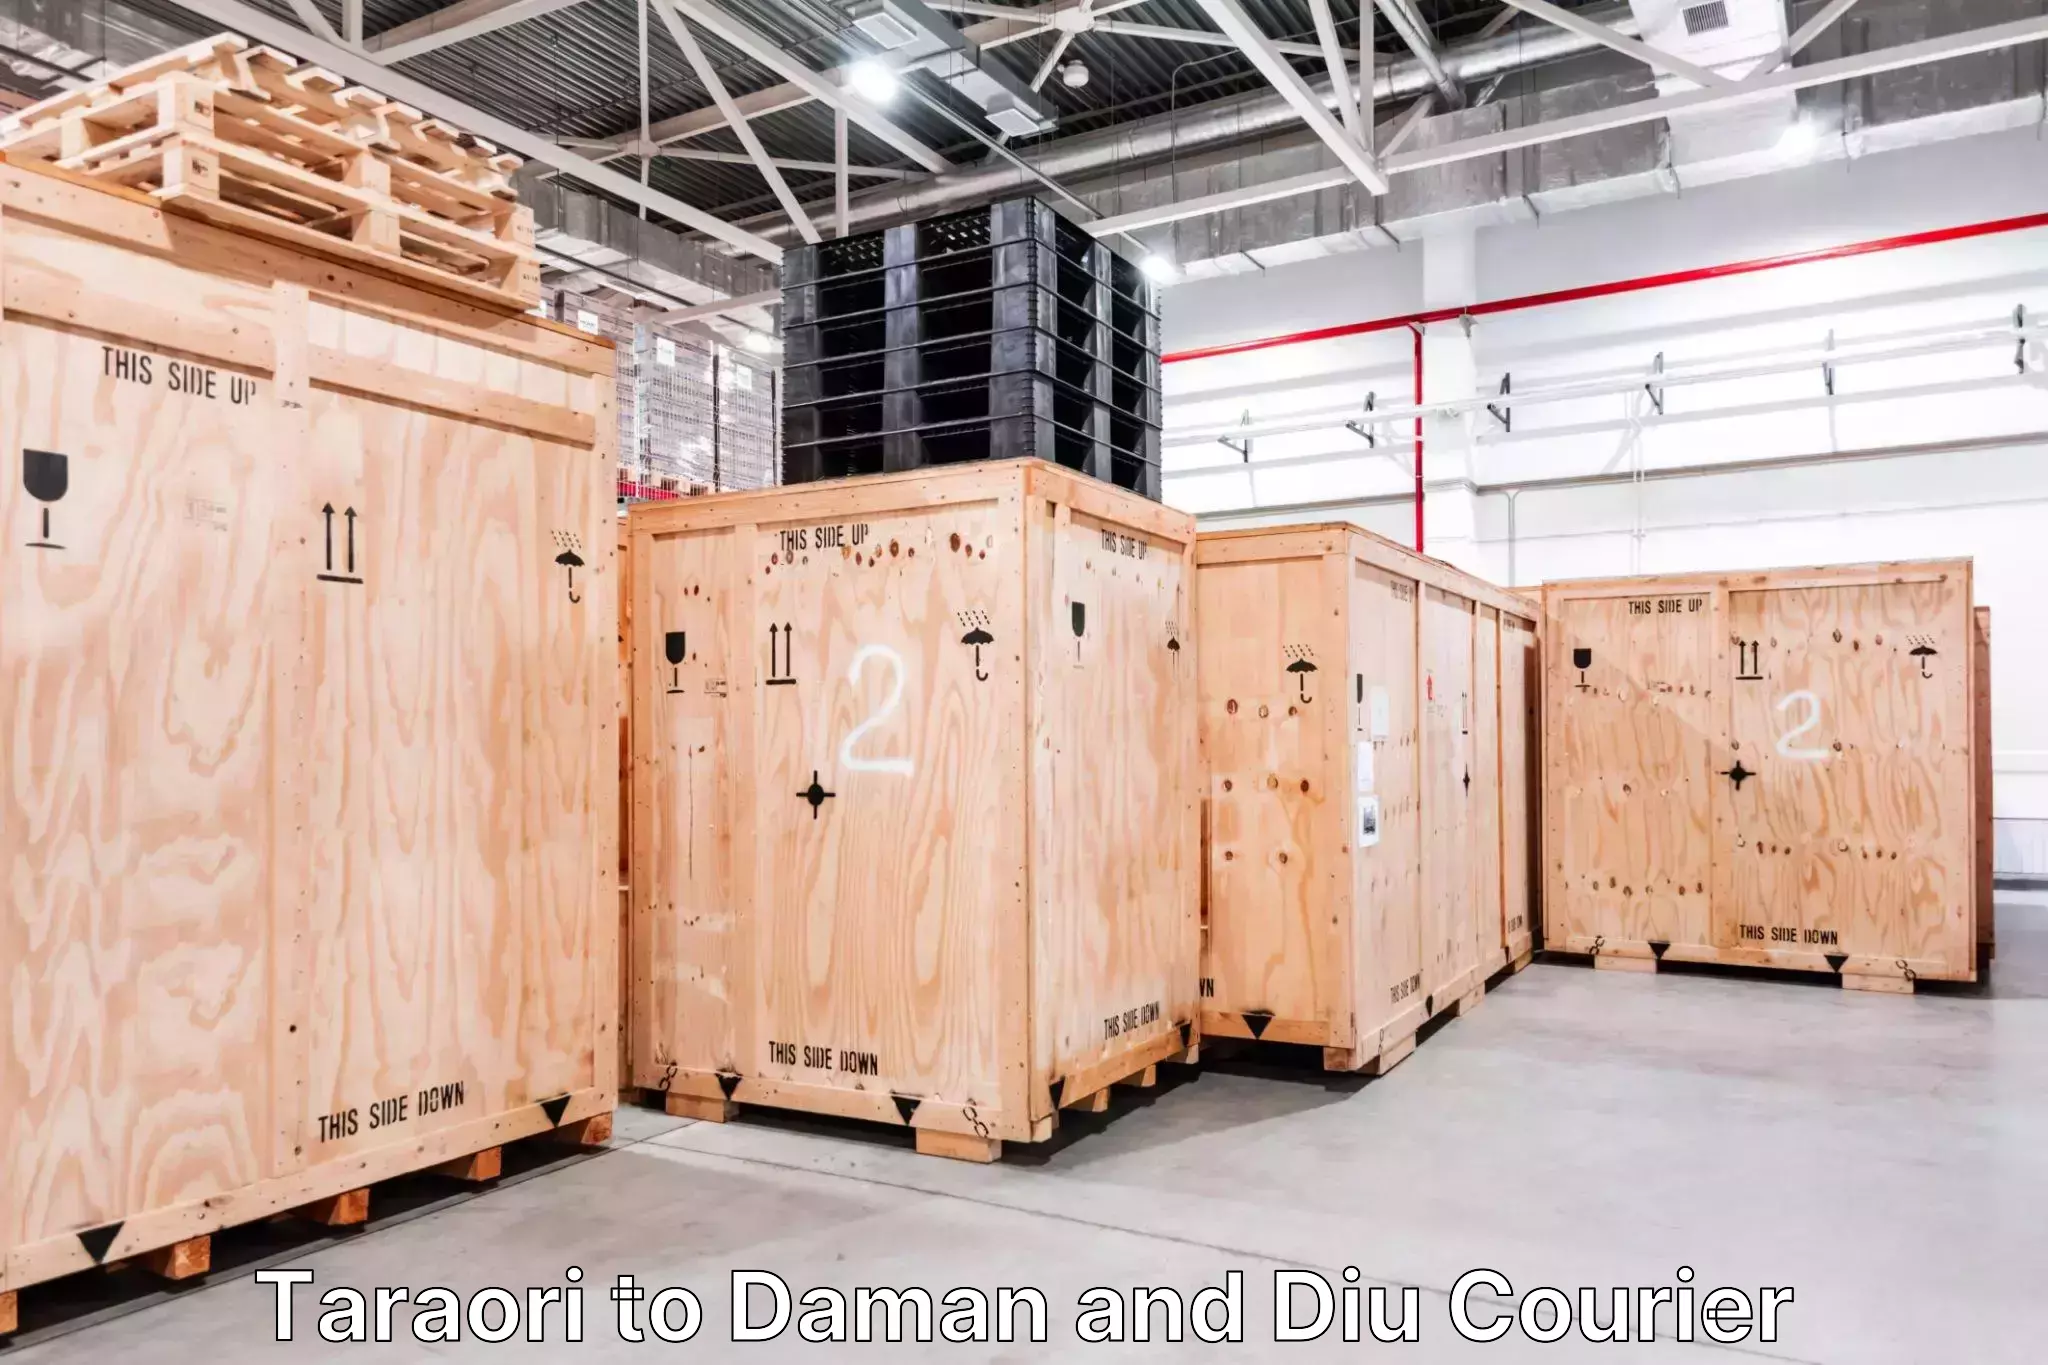 Luggage transport consulting Taraori to Daman and Diu